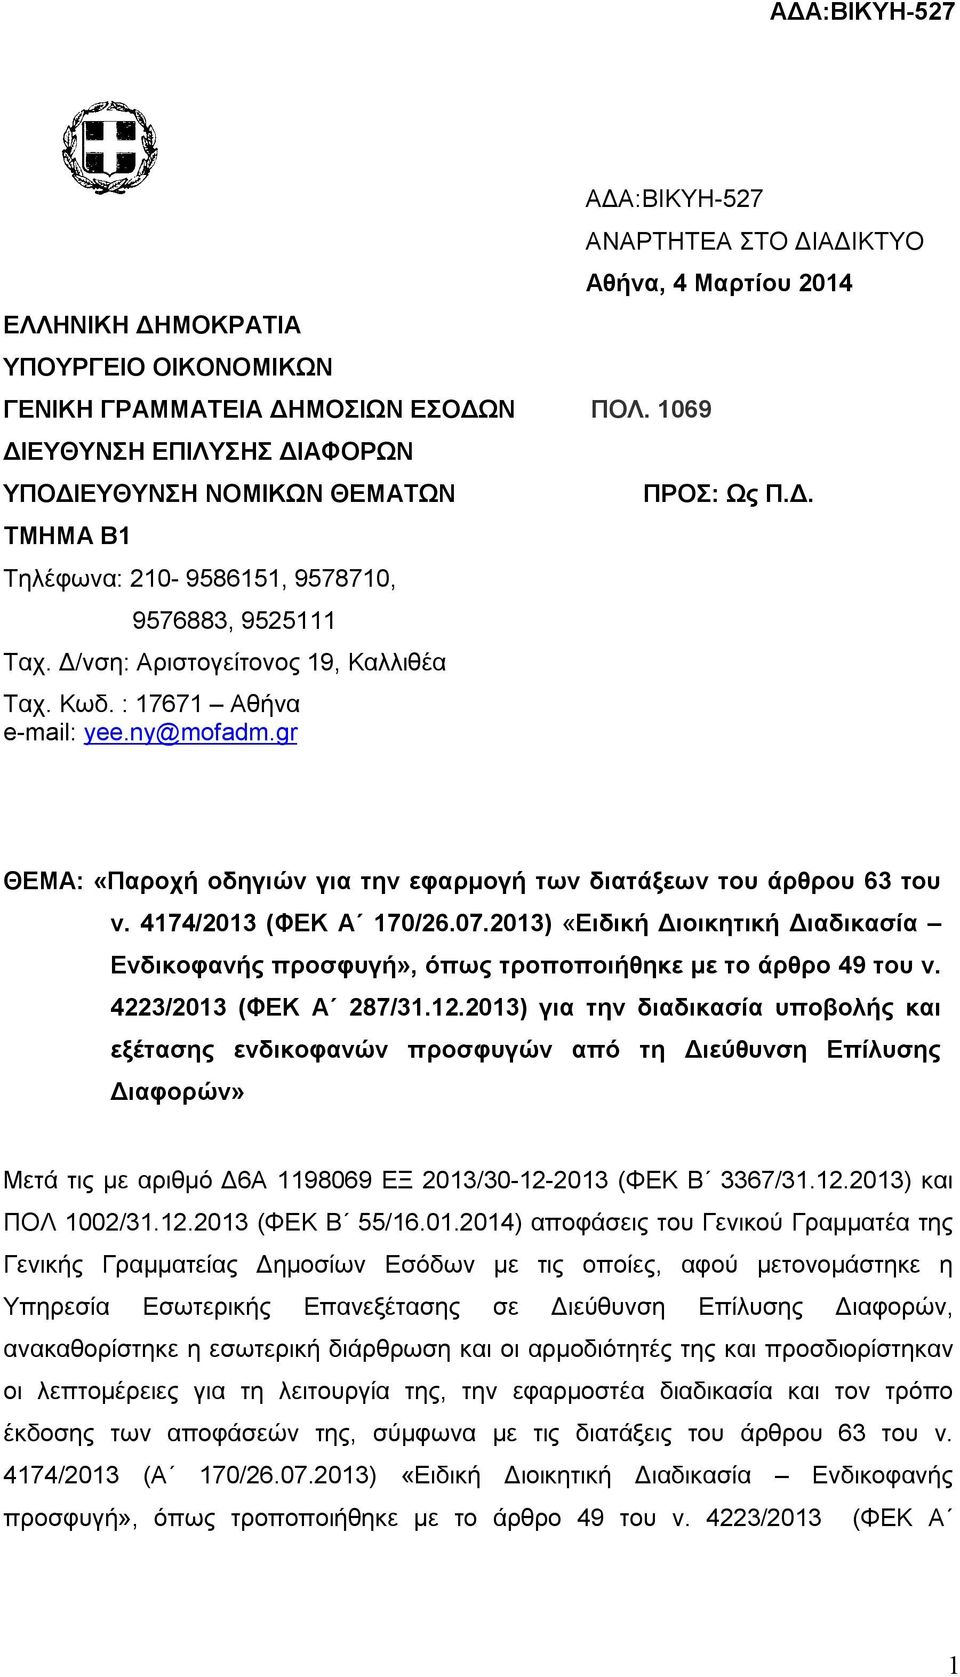 ny@mofadm.gr ΑΝΑΡΤΗΤΕΑ ΣΤΟ ΔΙΑΔΙΚΤΥΟ Αθήνα, 4 Μαρτίου 2014 ΠΡΟΣ: Ως Π.Δ. ΘΕΜΑ: «Παροχή οδηγιών για την εφαρμογή των διατάξεων του άρθρου 63 του ν. 4174/2013 (ΦΕΚ Α 170/26.07.